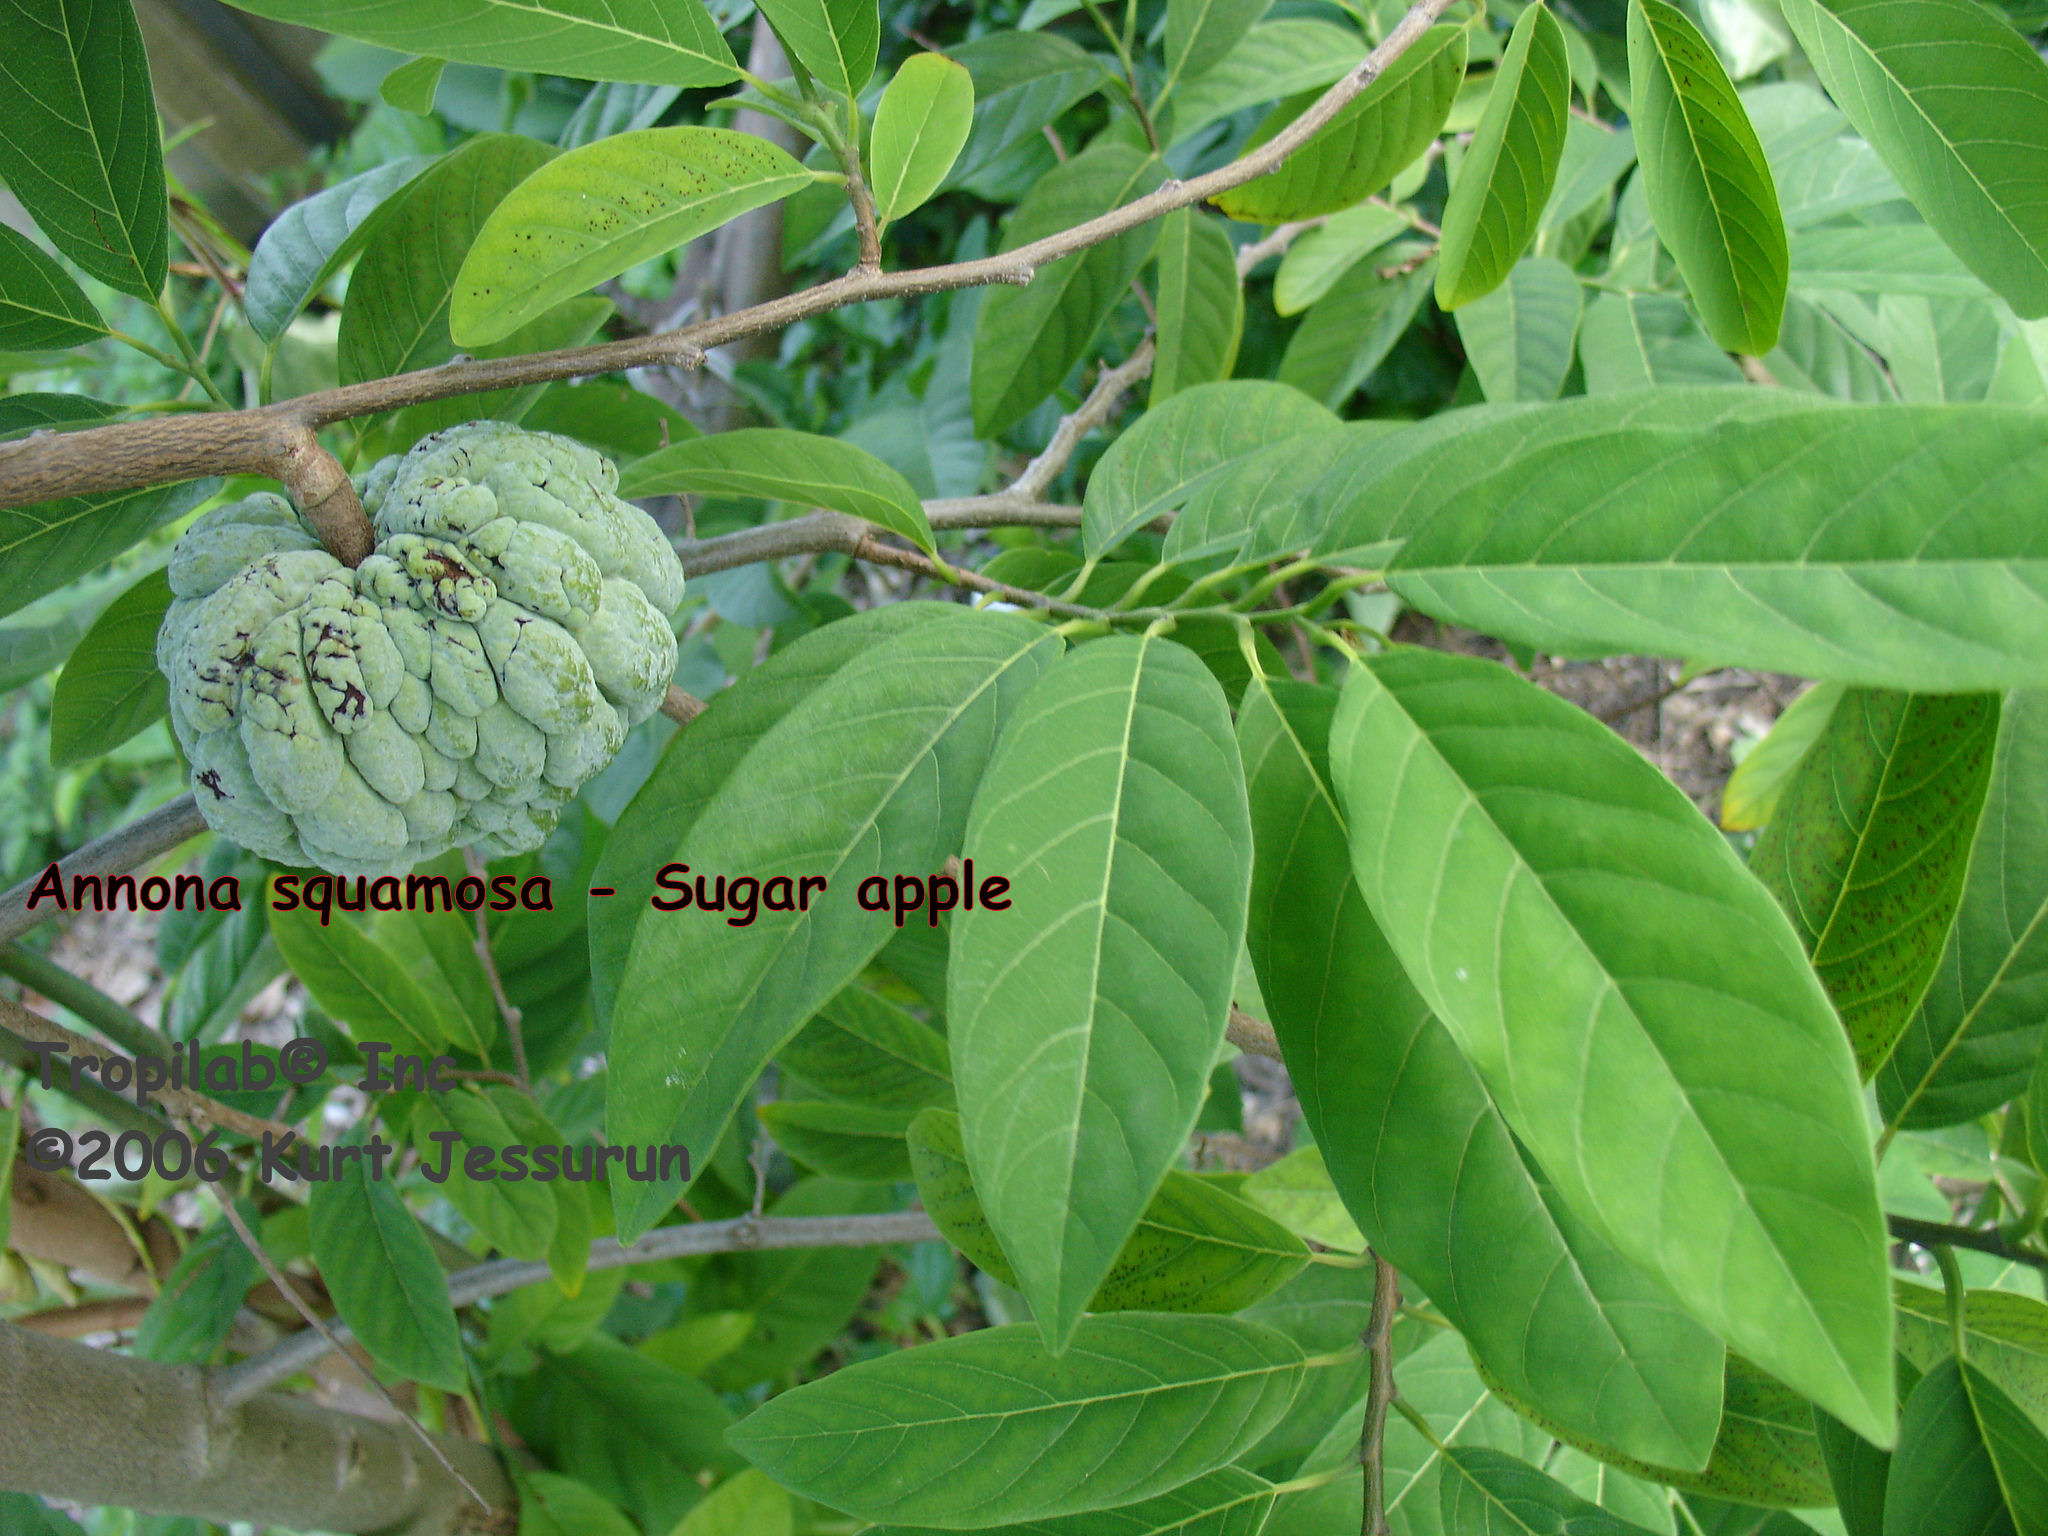 Annona squamosa - Sugar apple